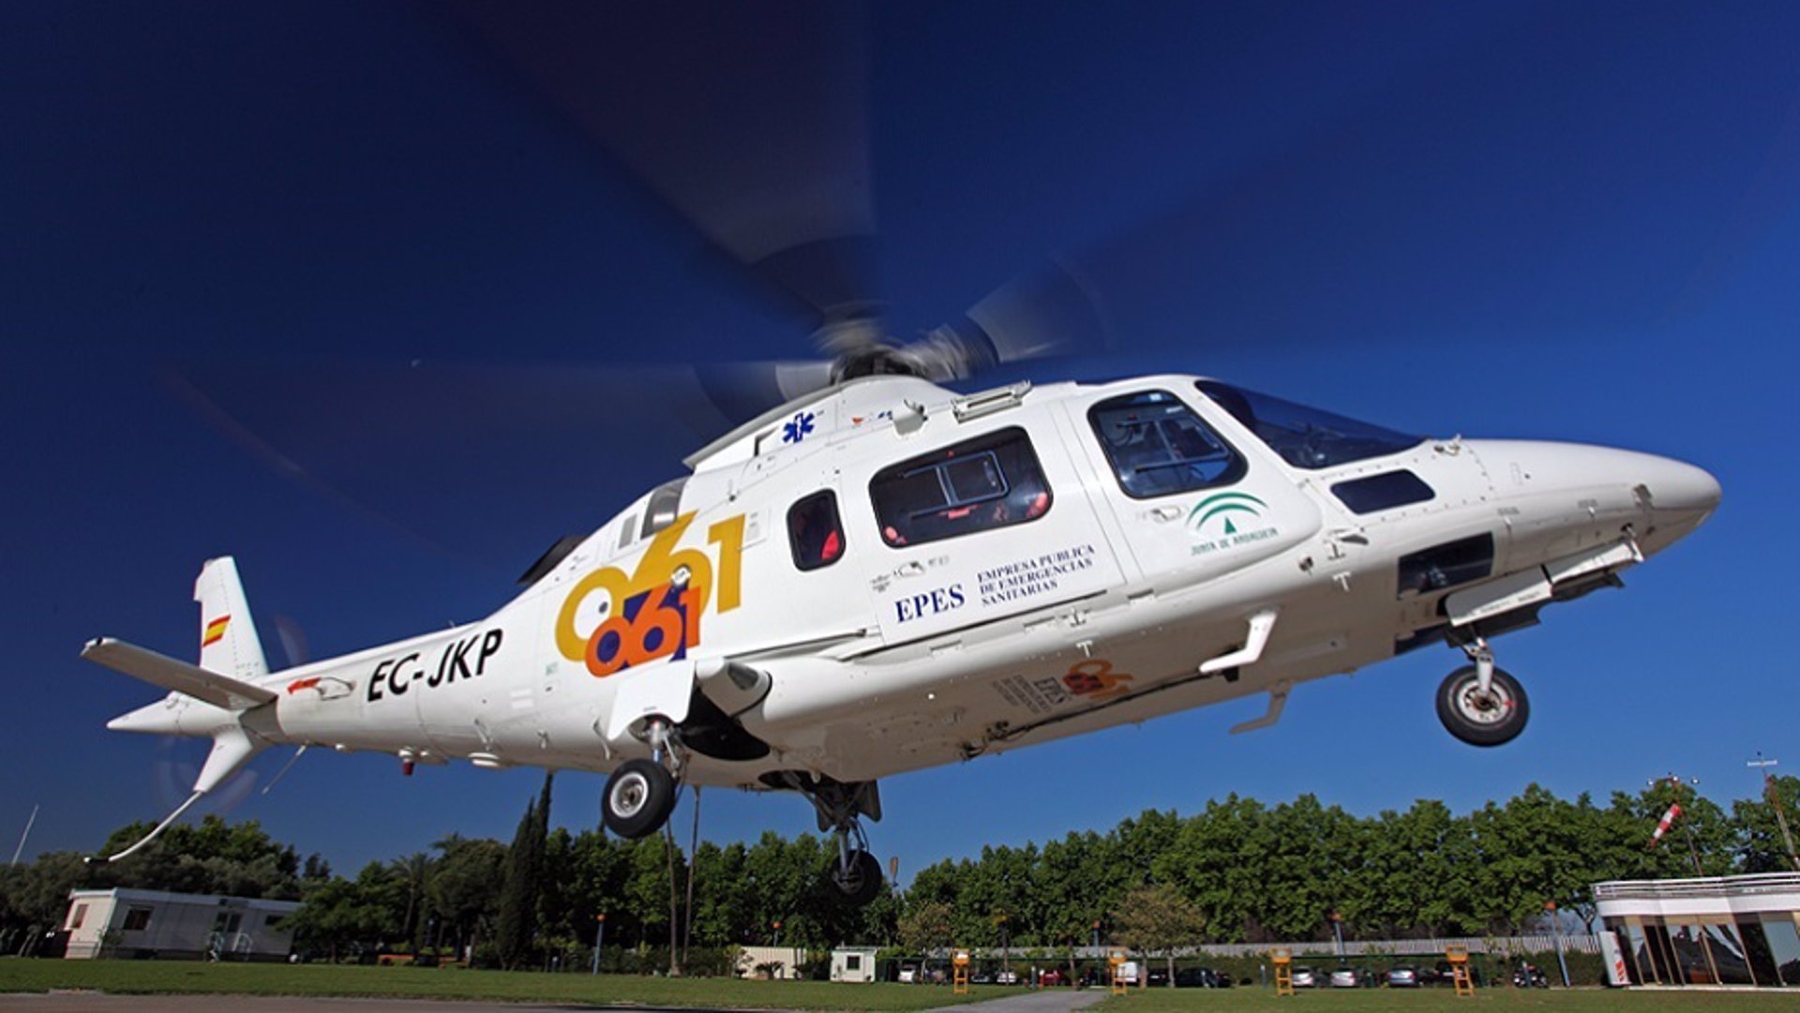 La mujer fue trasladada al hospital en un helicóptero del 061.